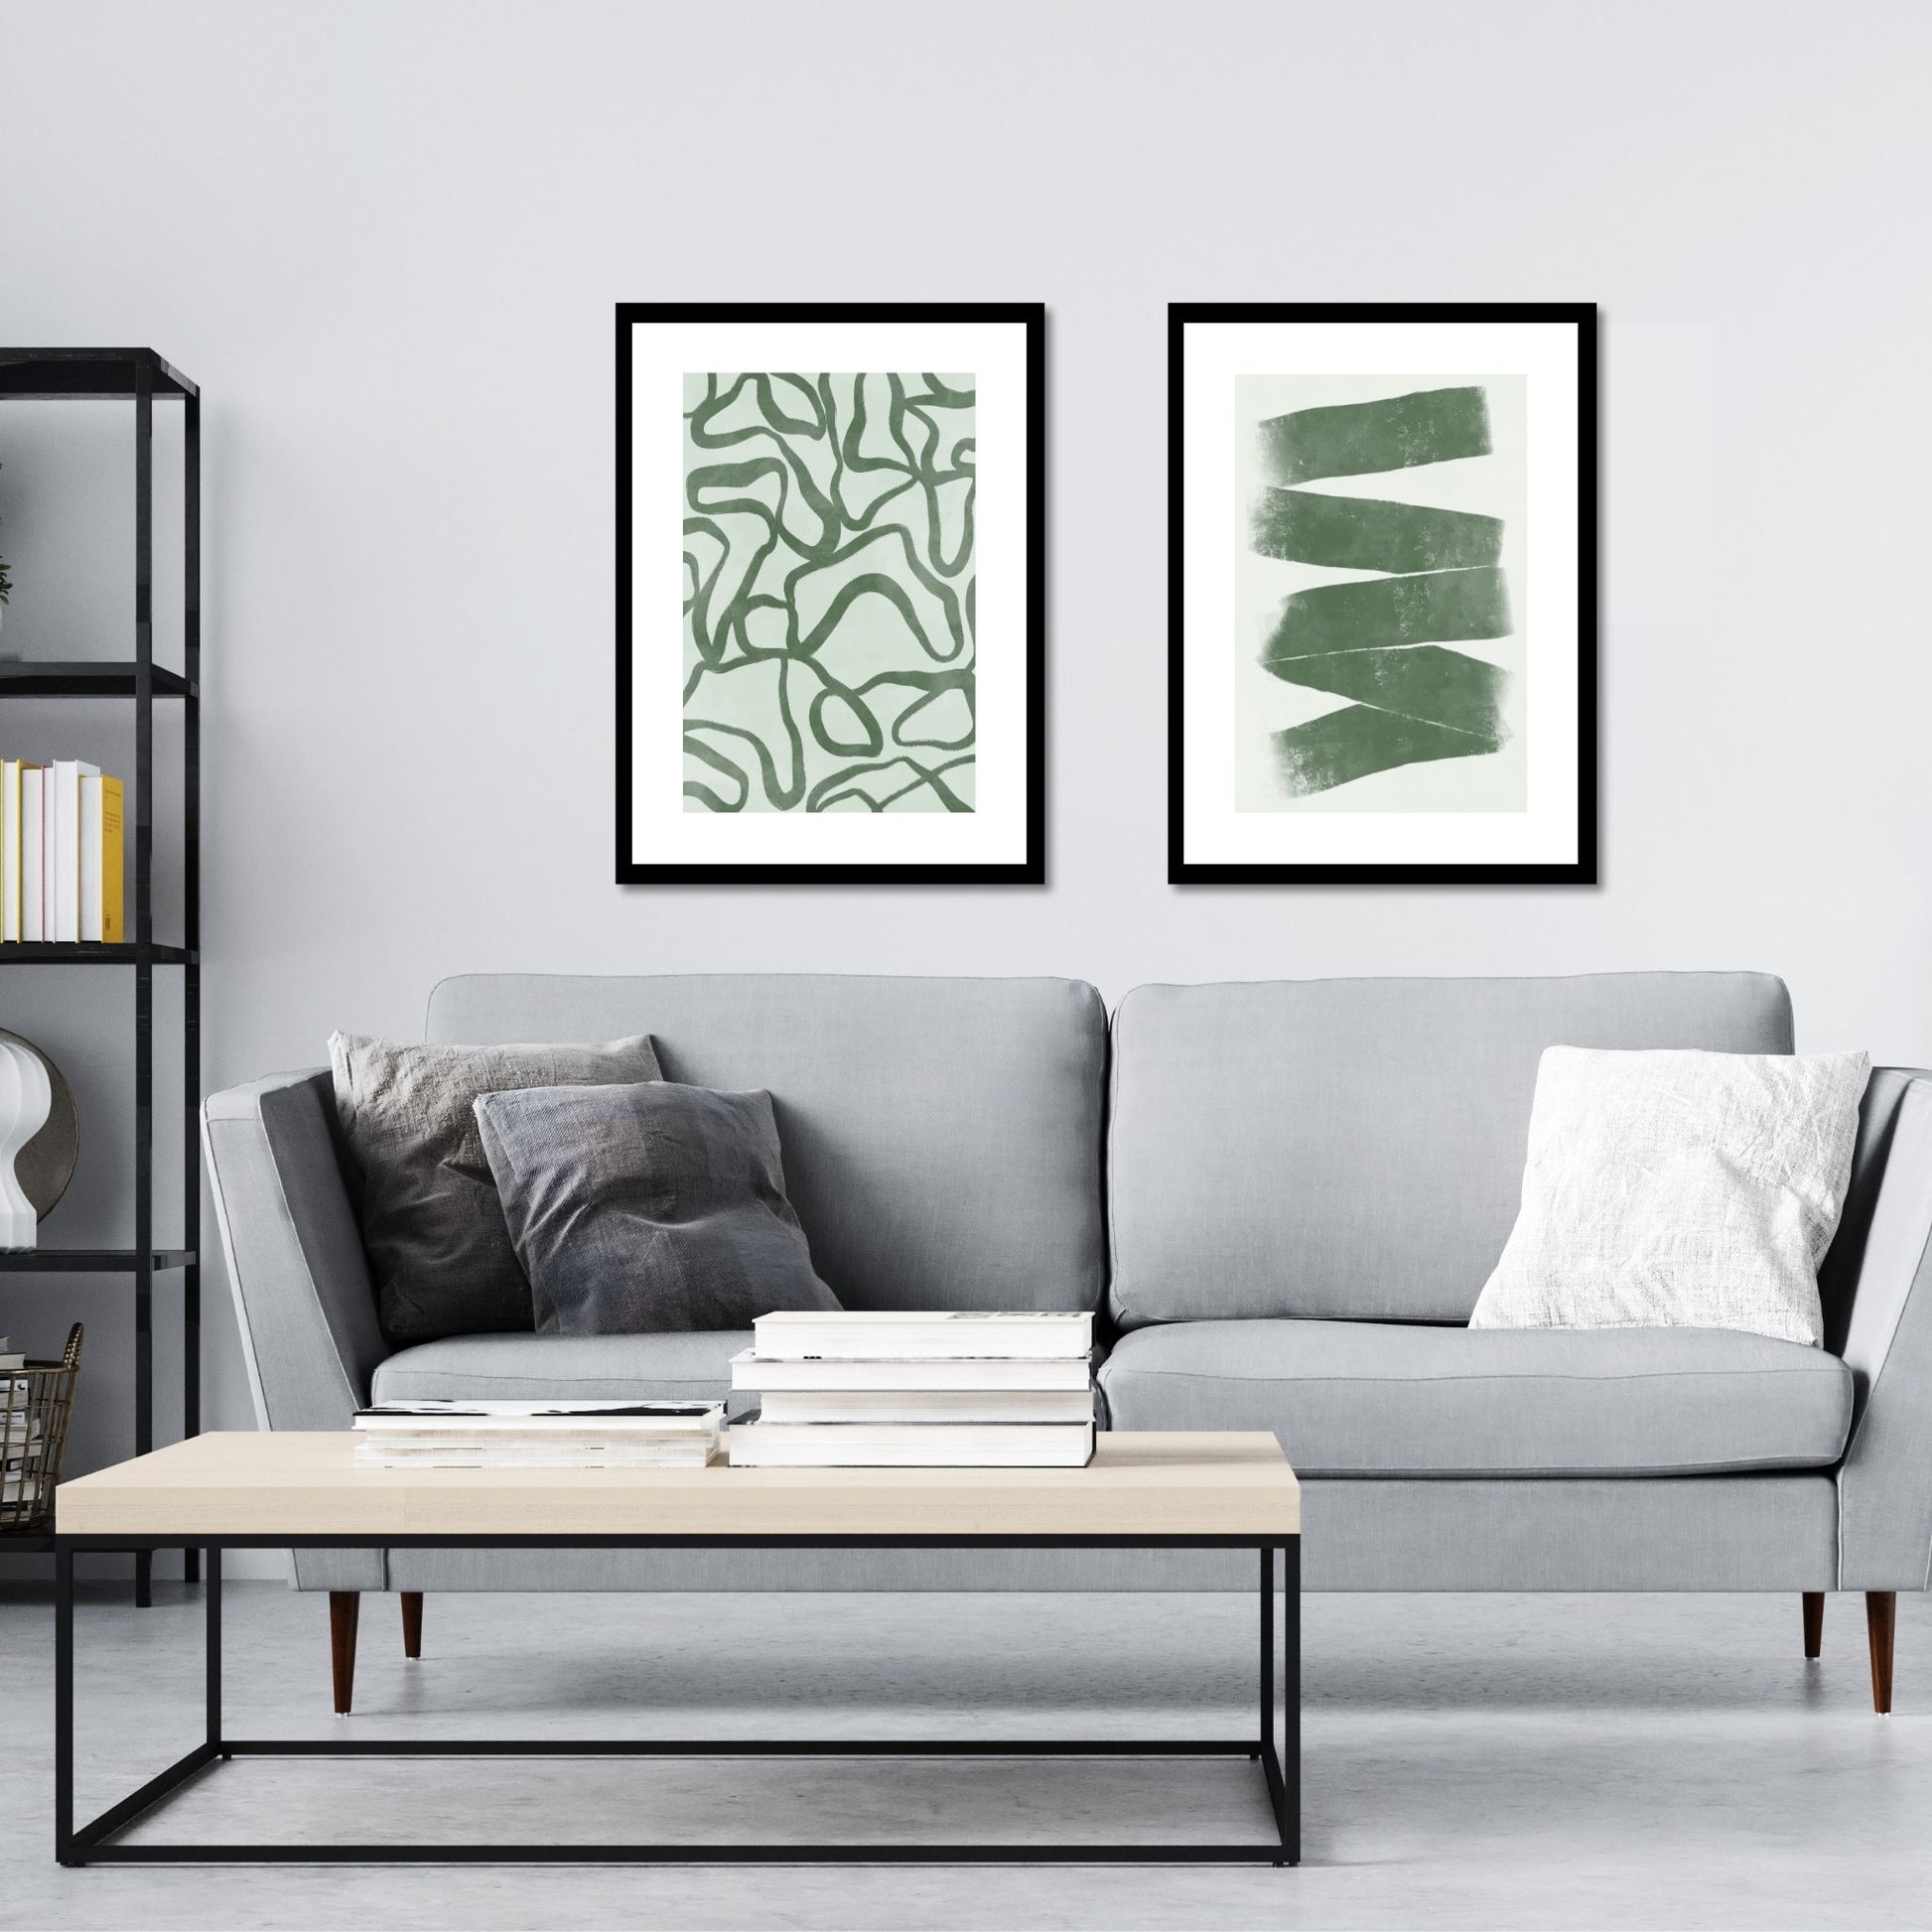 Green Abstract plakat. Med sine beroligende grønne toner og sofistikerte design, tilfører denne plakaten en følelse av ro og harmoni til ethvert rom. Illustrasjonen viser plakat No23 og No24 i sort ramme på en vegg over en sofa.